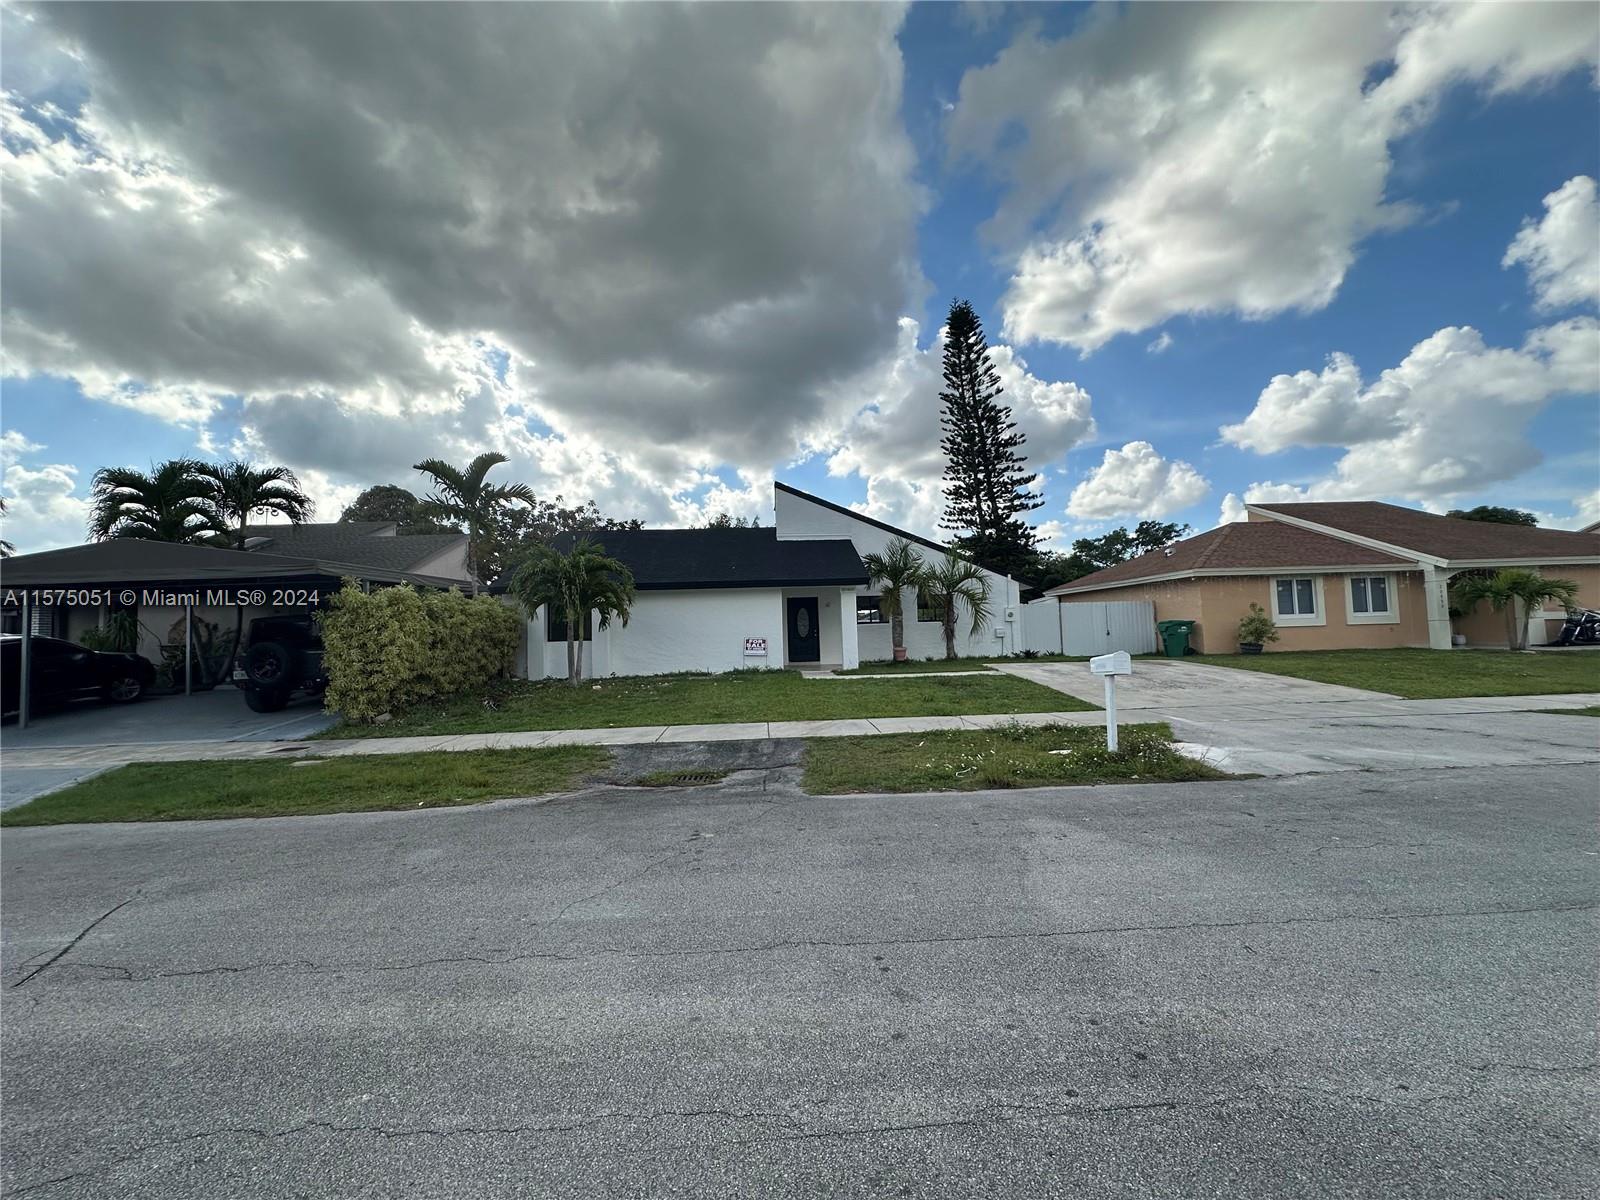 View Miami, FL 33177 house